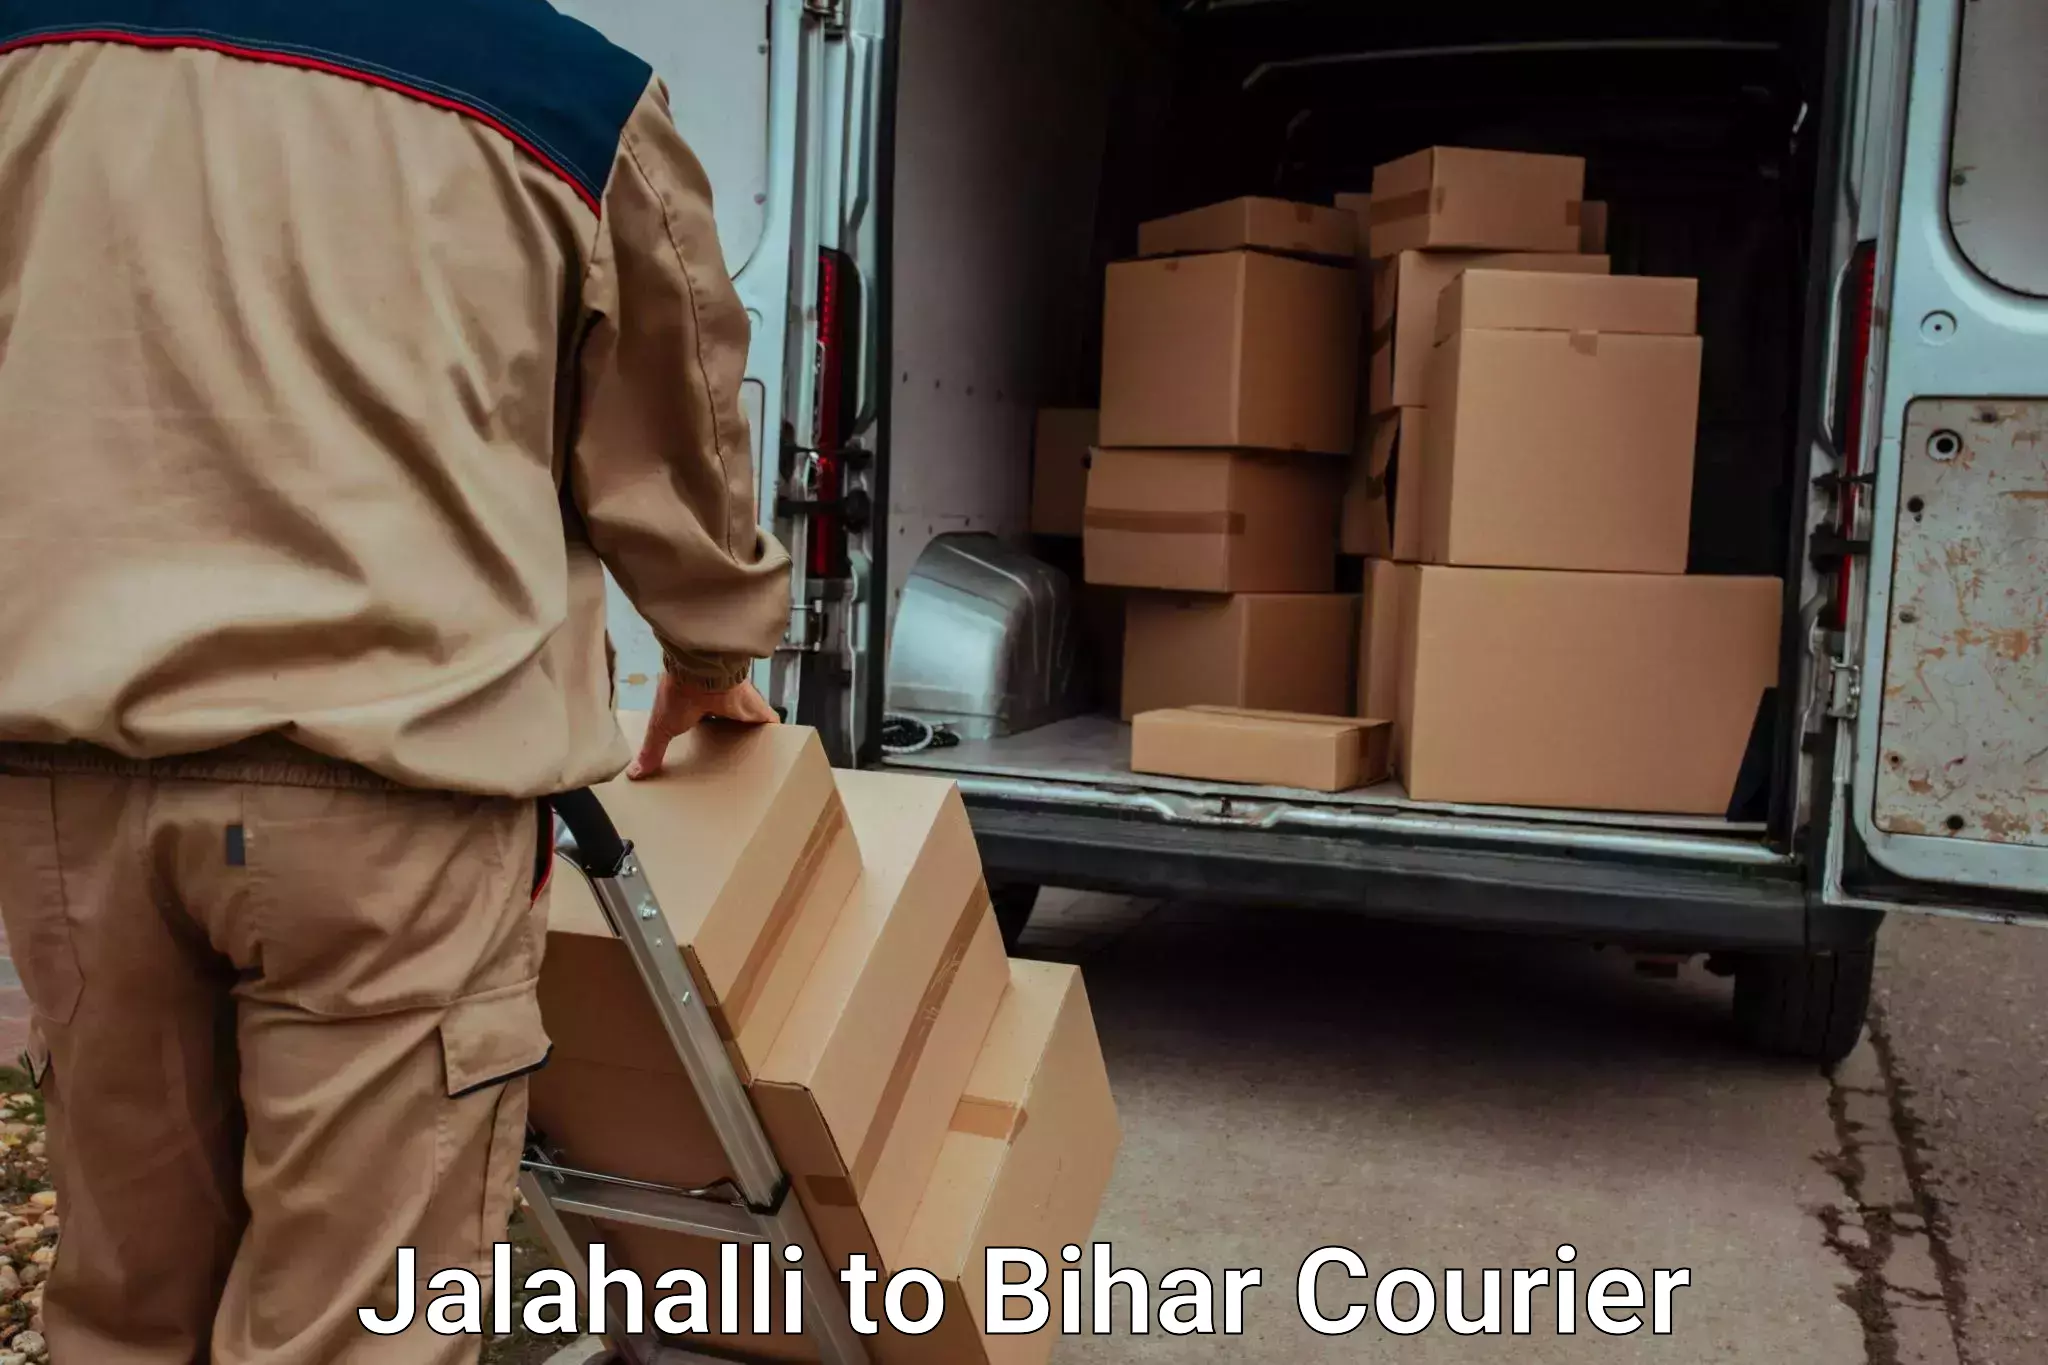 Professional moving company Jalahalli to Goh Aurangabad